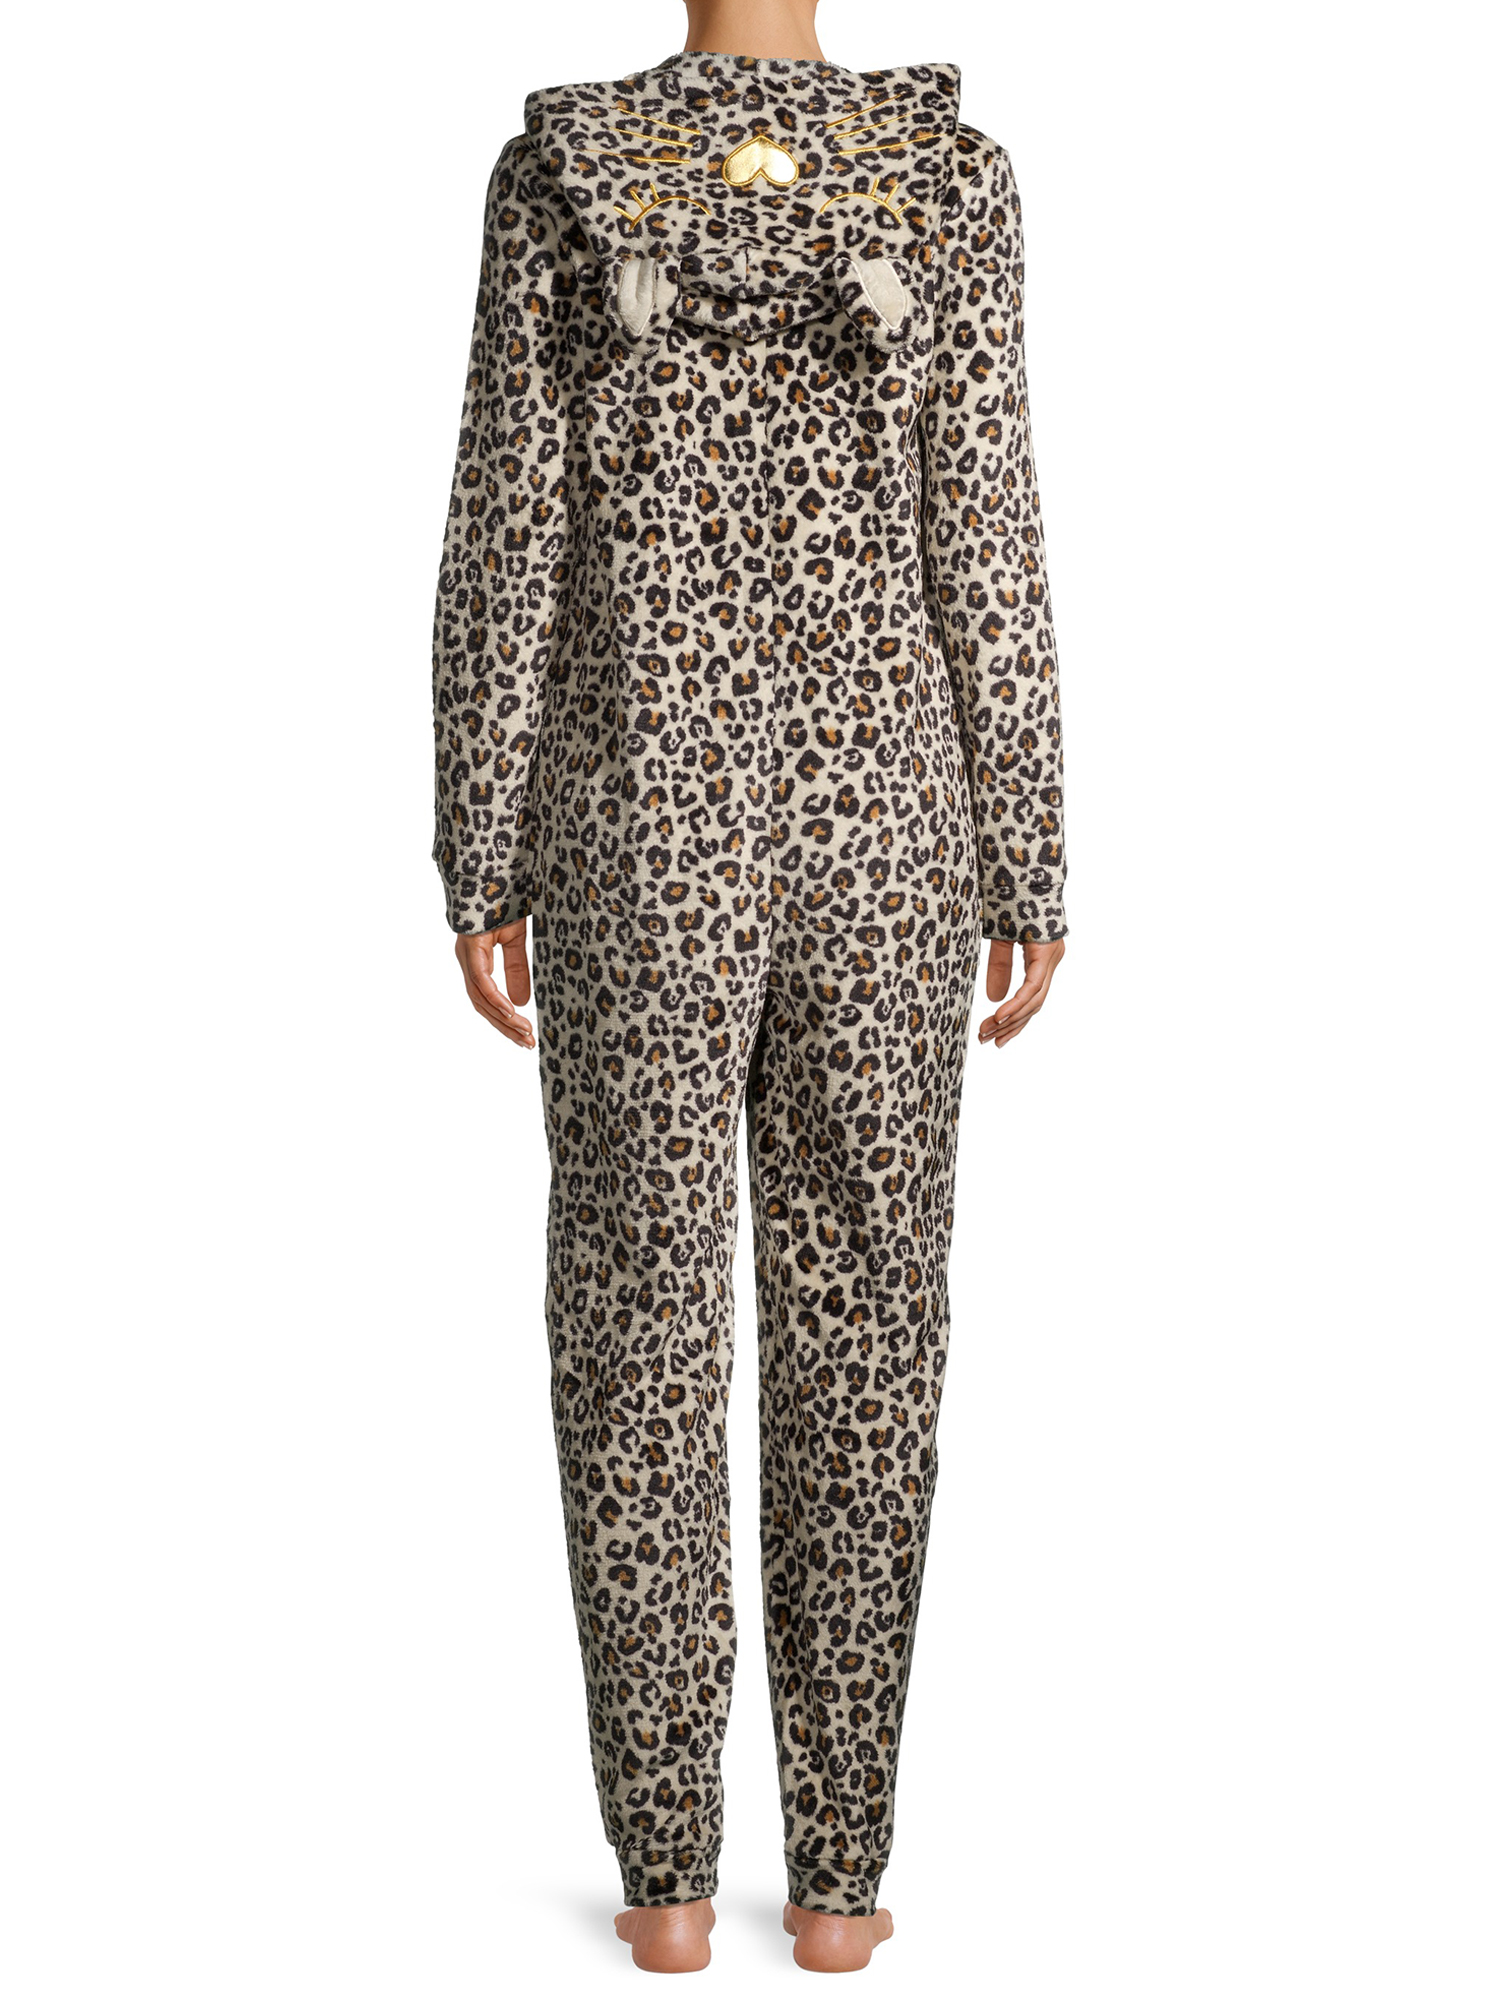 George Women's Leopard Print Union Suit - image 4 of 6